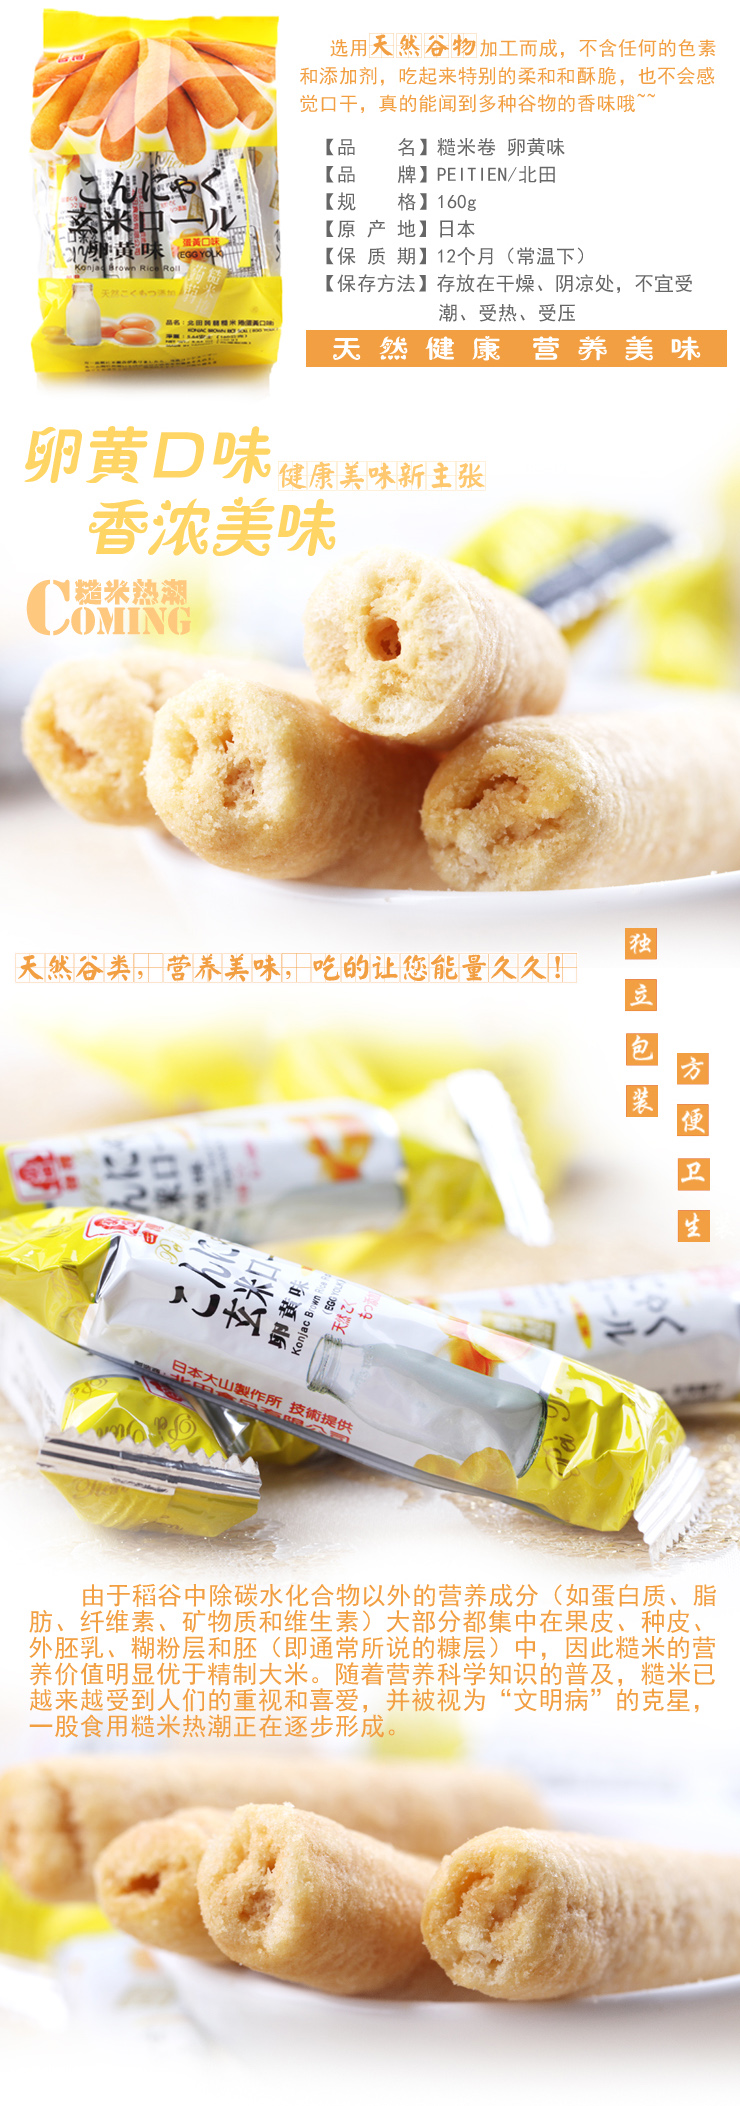 北田糙米卷蛋黄味 台湾进口零食160g*4袋 价格